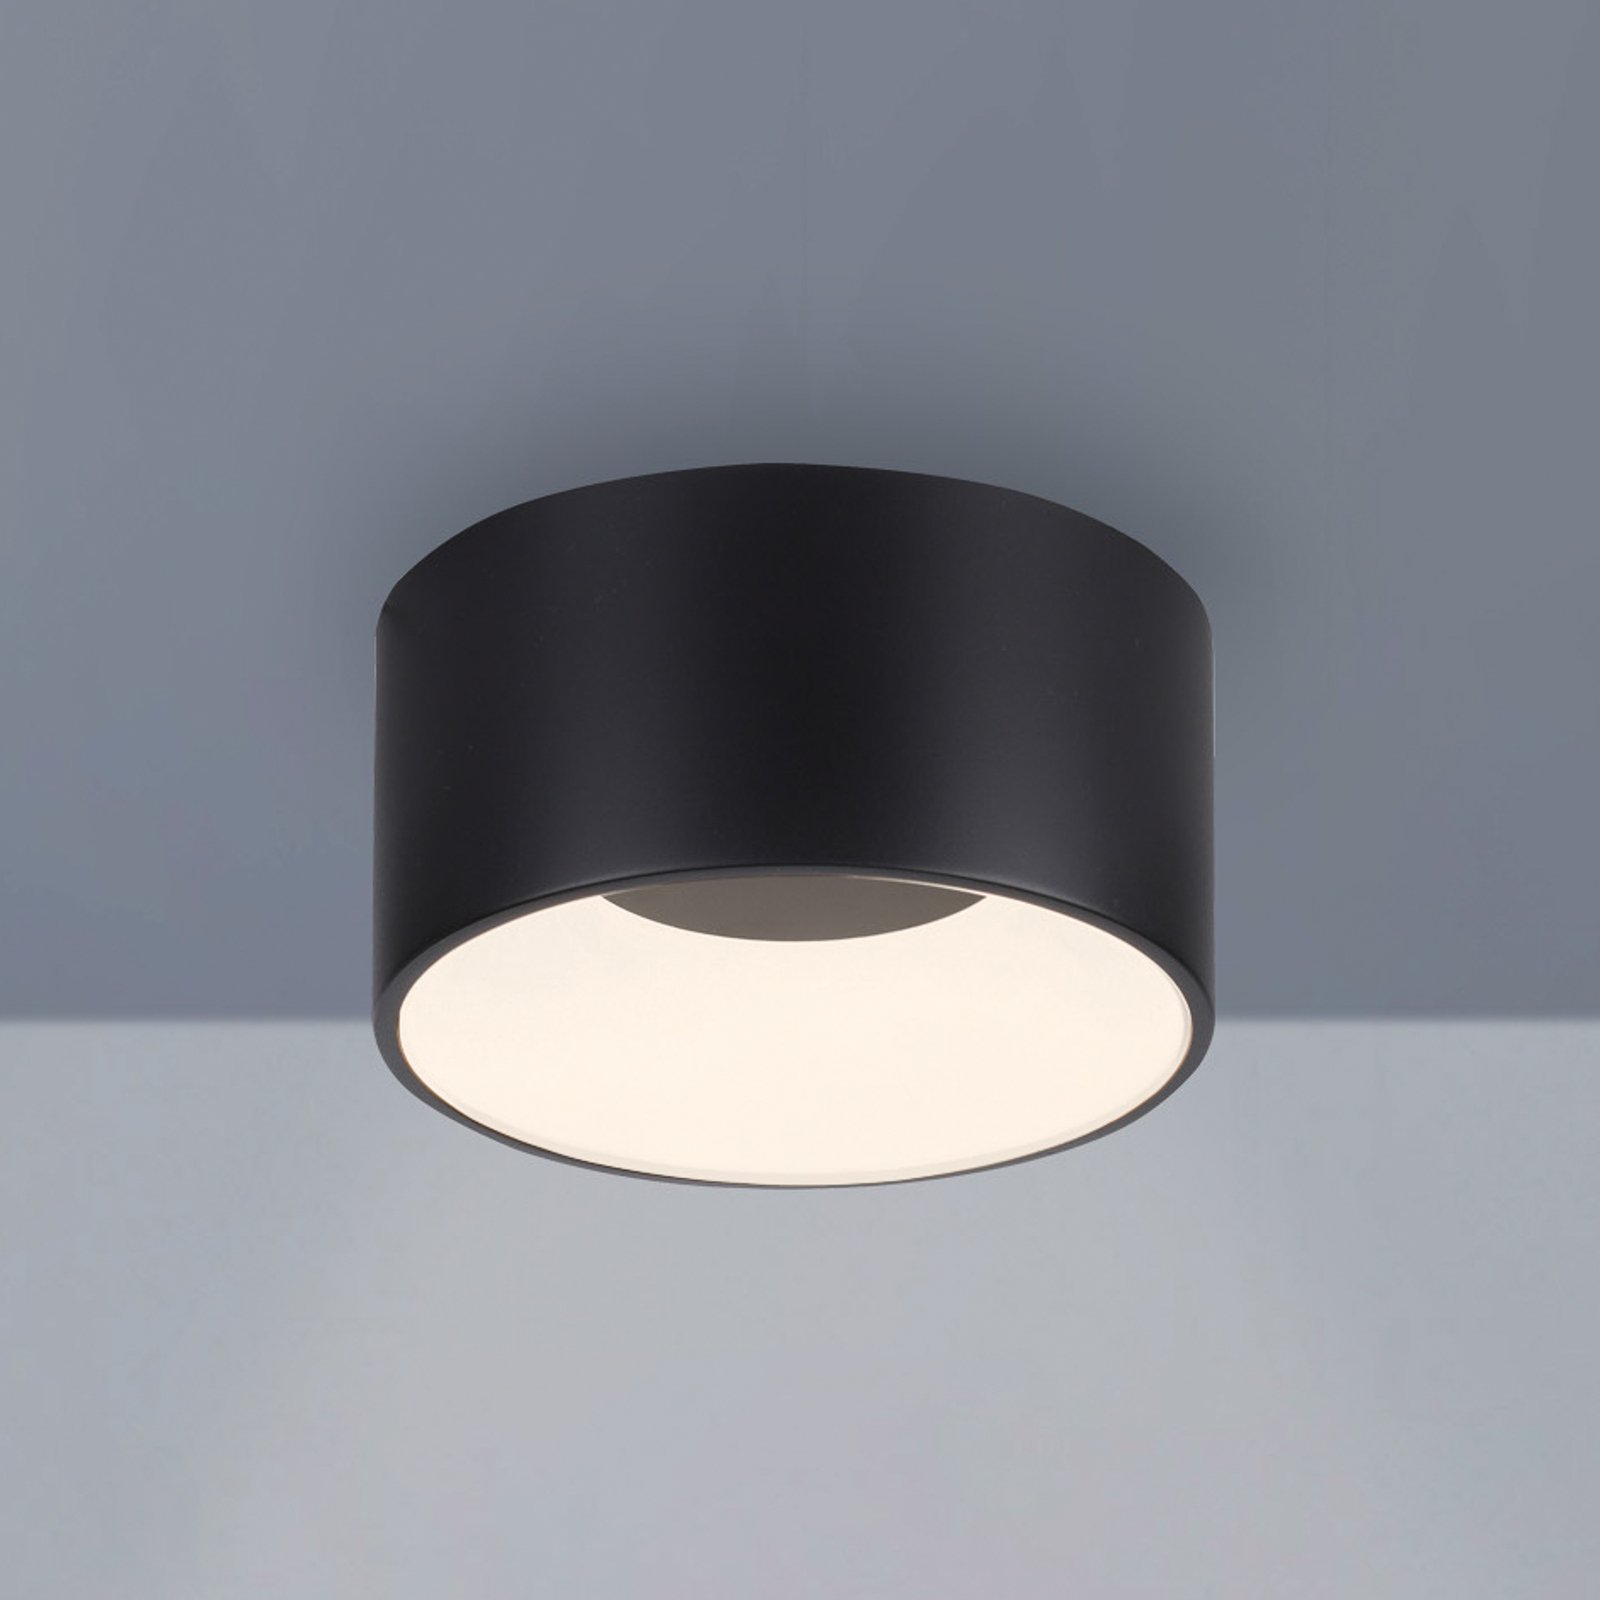 JUST LIGHT. LED stropní svítidlo Tanika černé, Ø16cm, stmívatelné